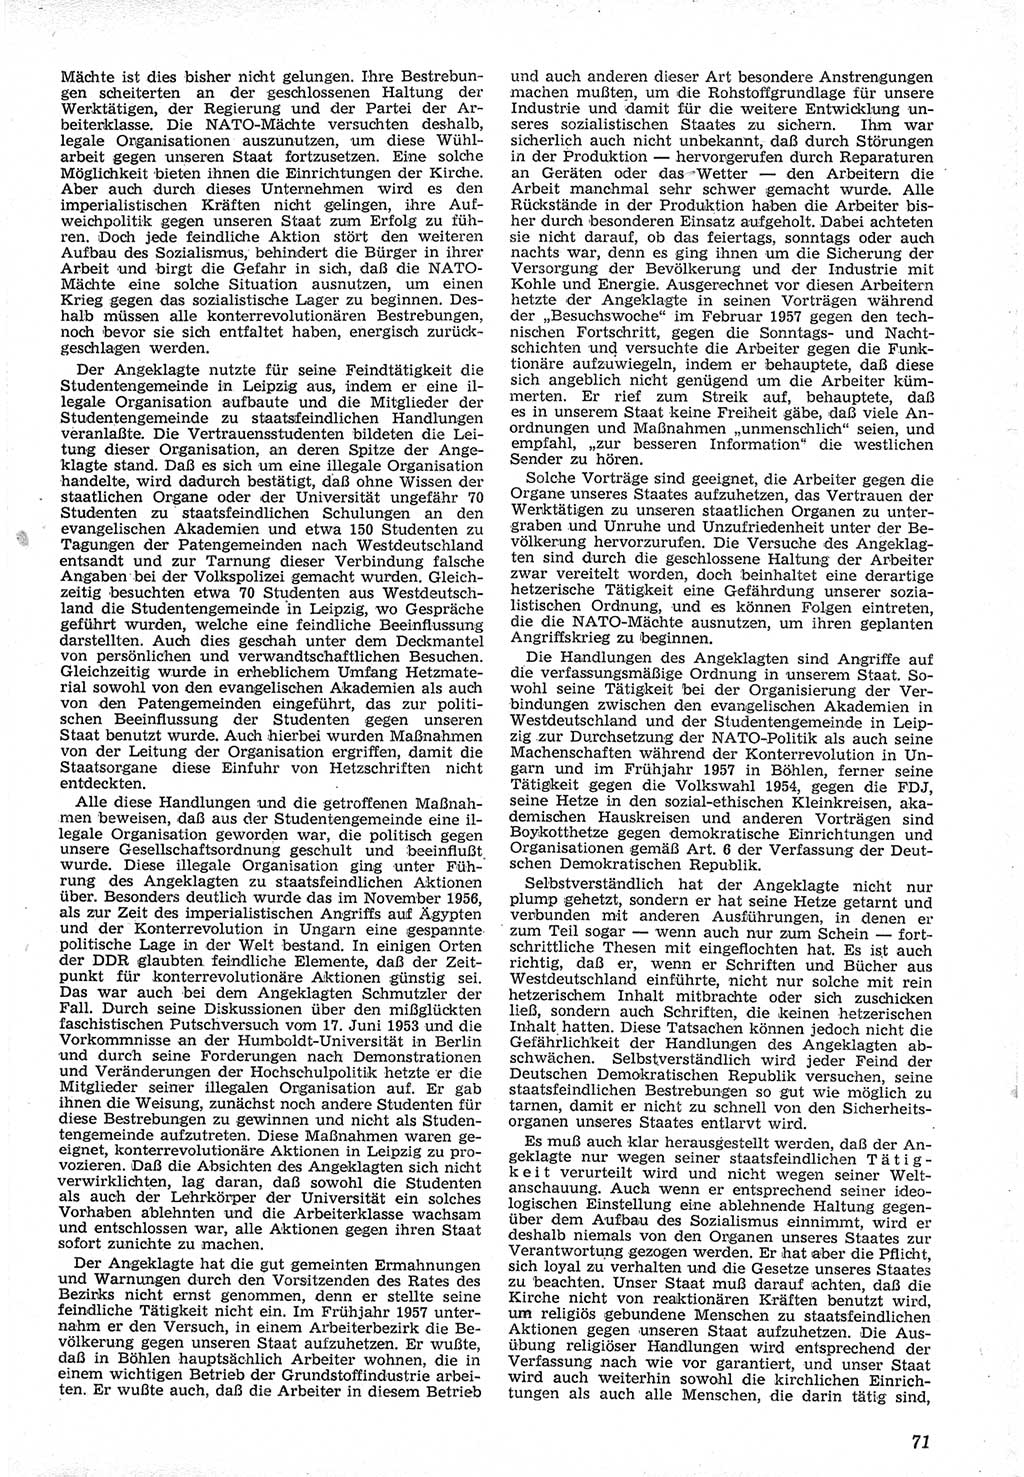 Neue Justiz (NJ), Zeitschrift für Recht und Rechtswissenschaft [Deutsche Demokratische Republik (DDR)], 12. Jahrgang 1958, Seite 71 (NJ DDR 1958, S. 71)